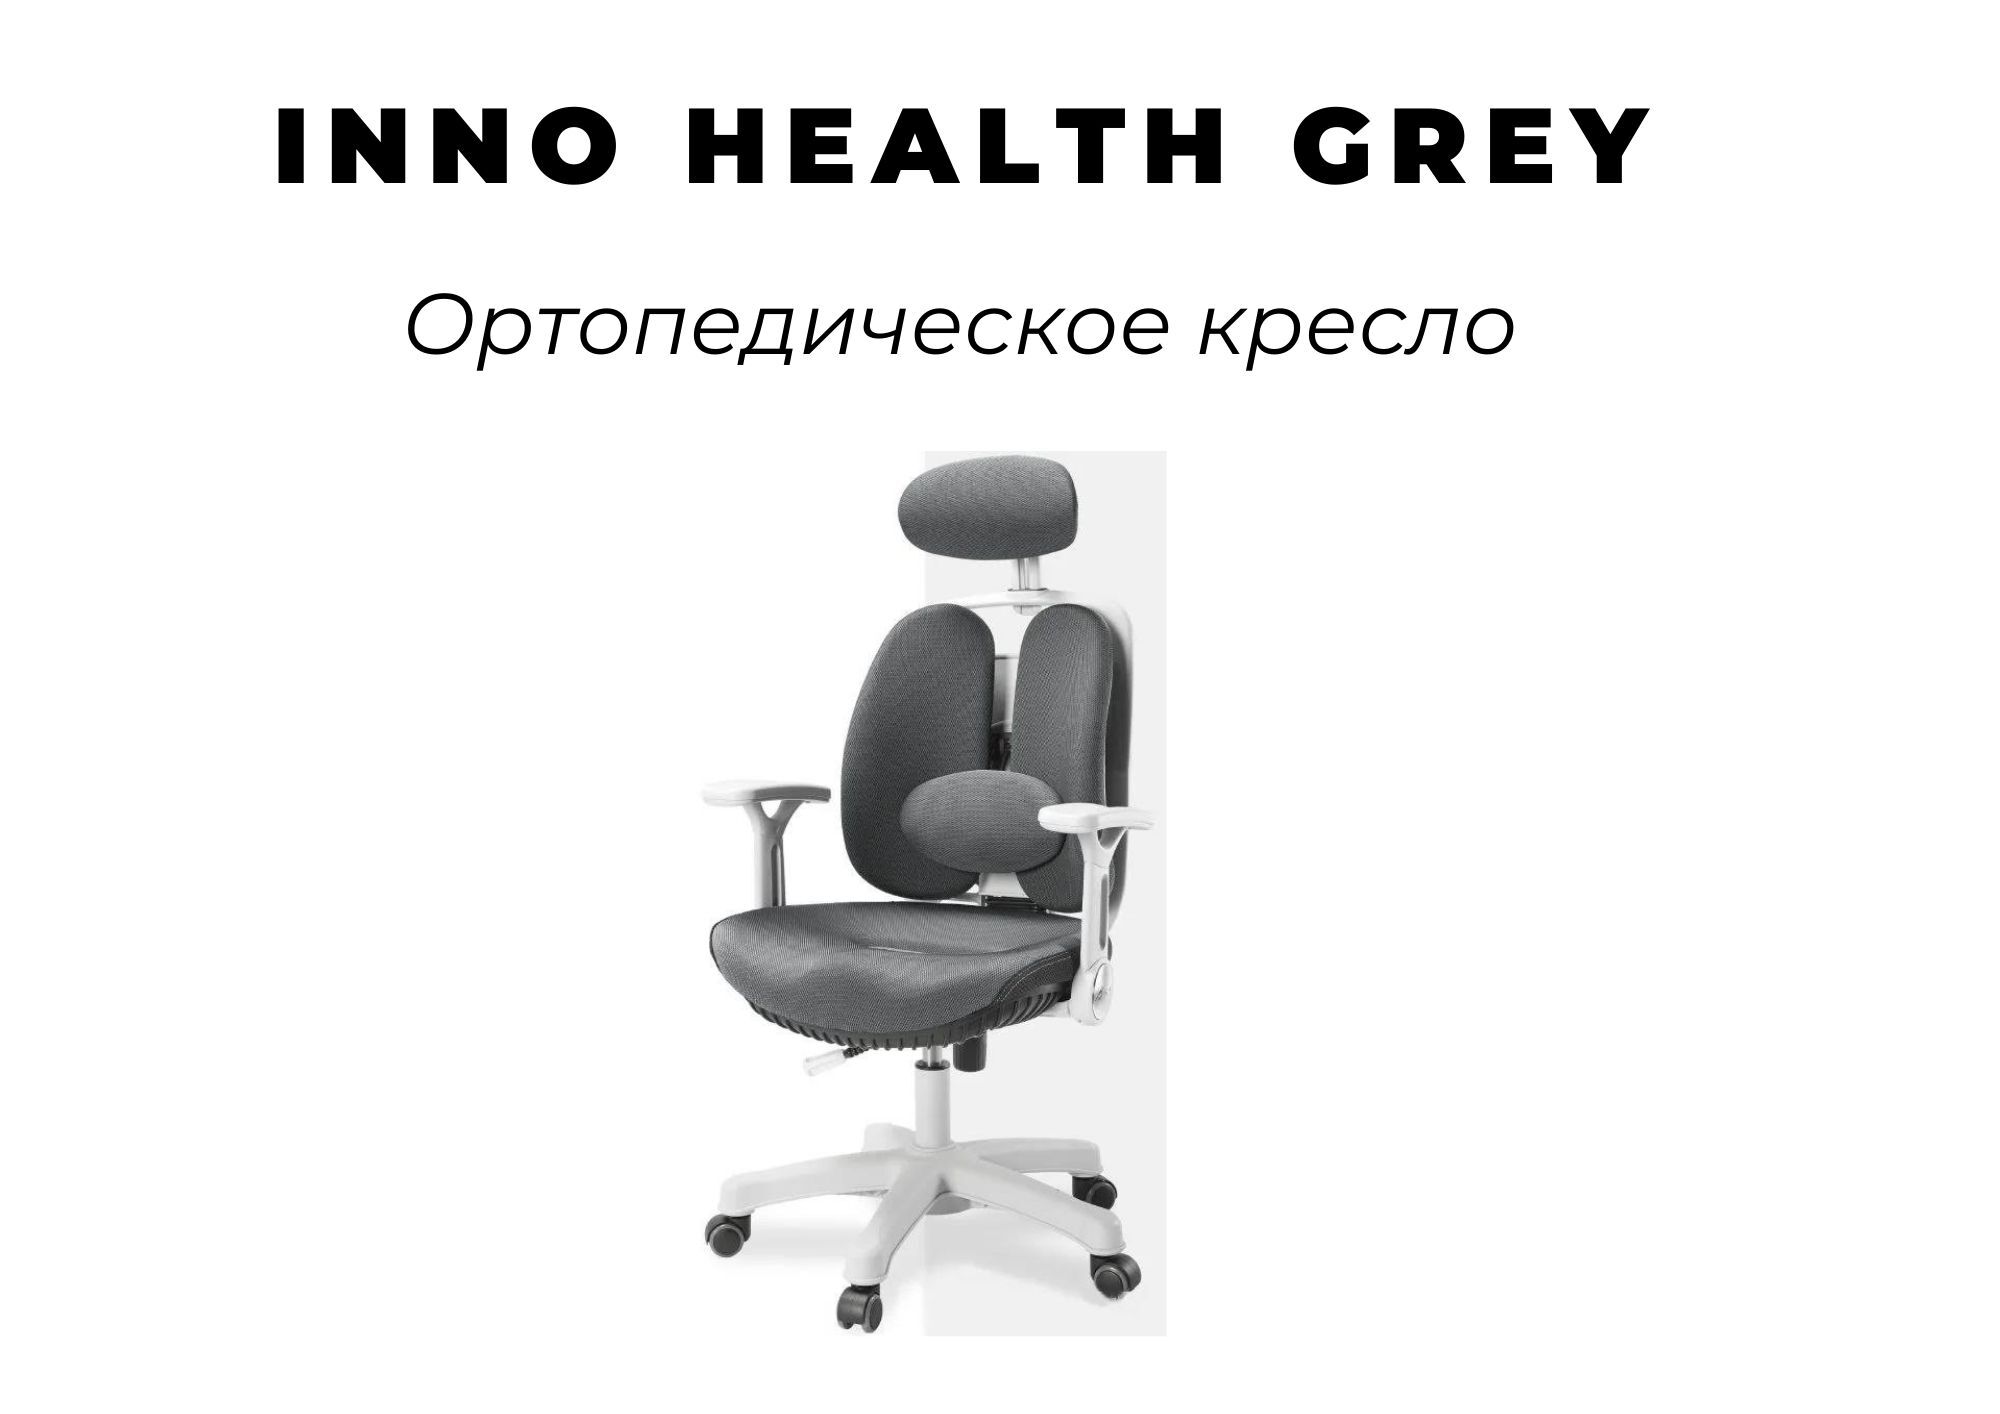 Компьютерное кресло synif inno health